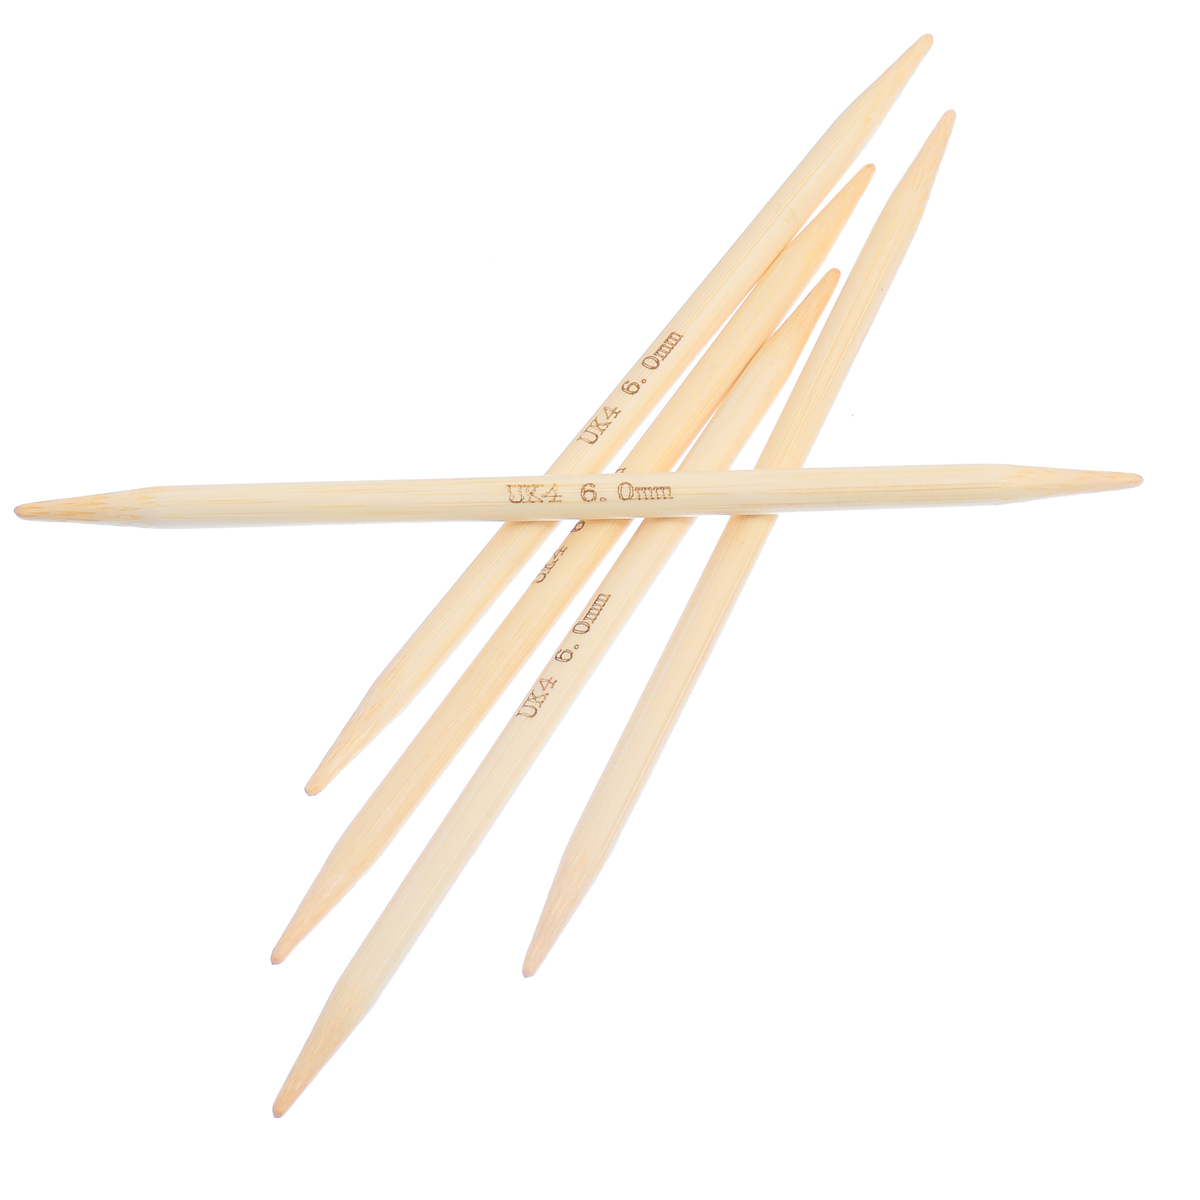 (UK4 6.0mm) 竹 ダブルポイント 編み針 ナチュラル 15cm 長さ、 1 セット ( 5 個/セット) の画像